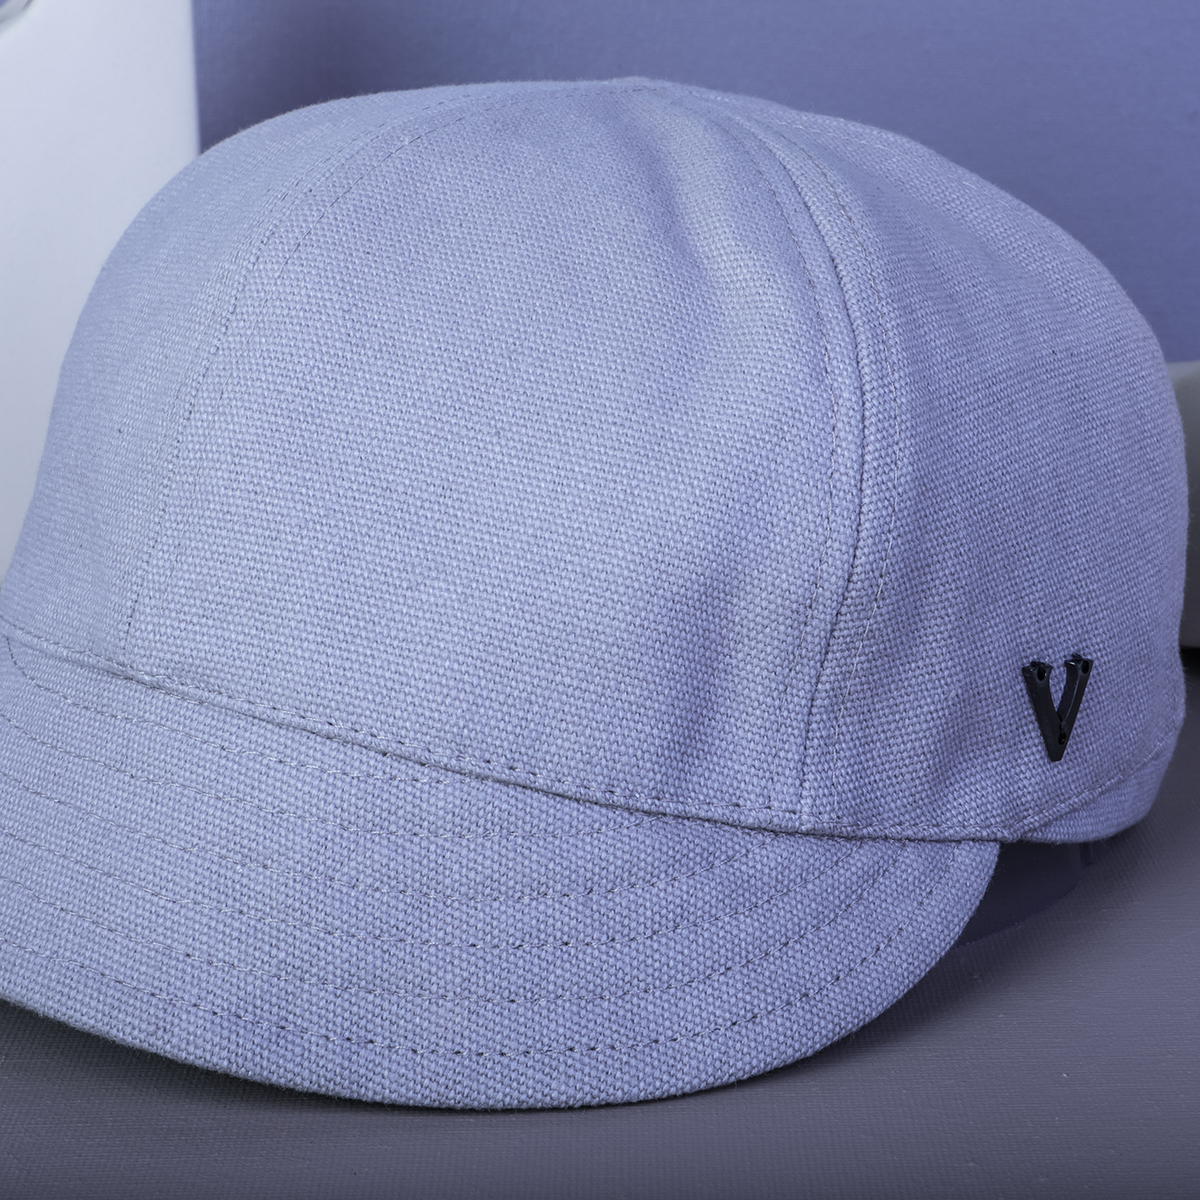 design vfa logo cappellini speciali pianura personalizzati